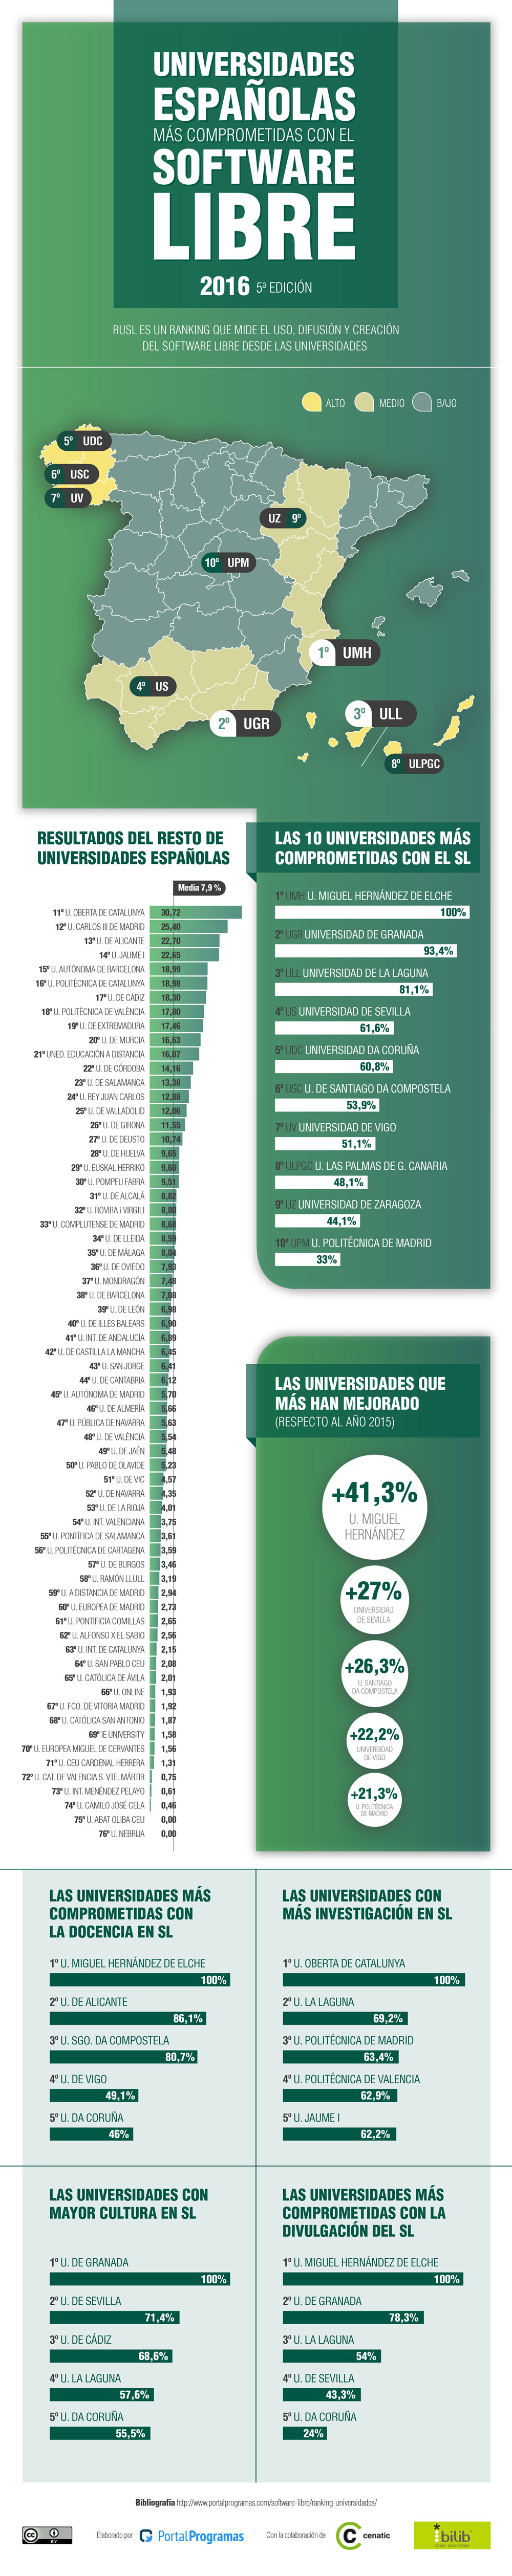 Las universidades españolas más comprometidas con el Software Libre en 2016 - Infografía